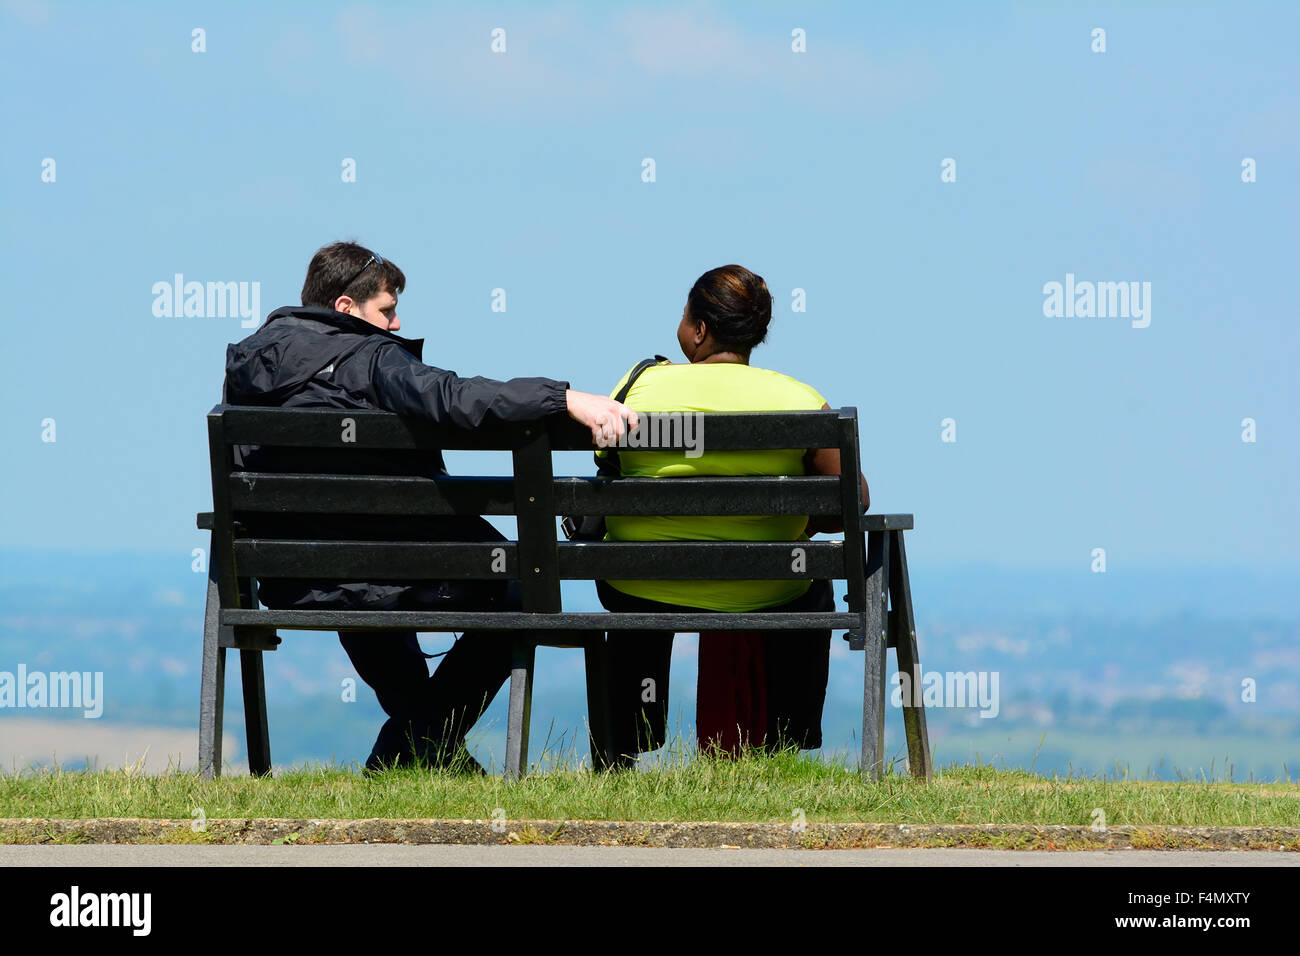 Caucasian man sitting on bench avec femme afro-antillaise Banque D'Images